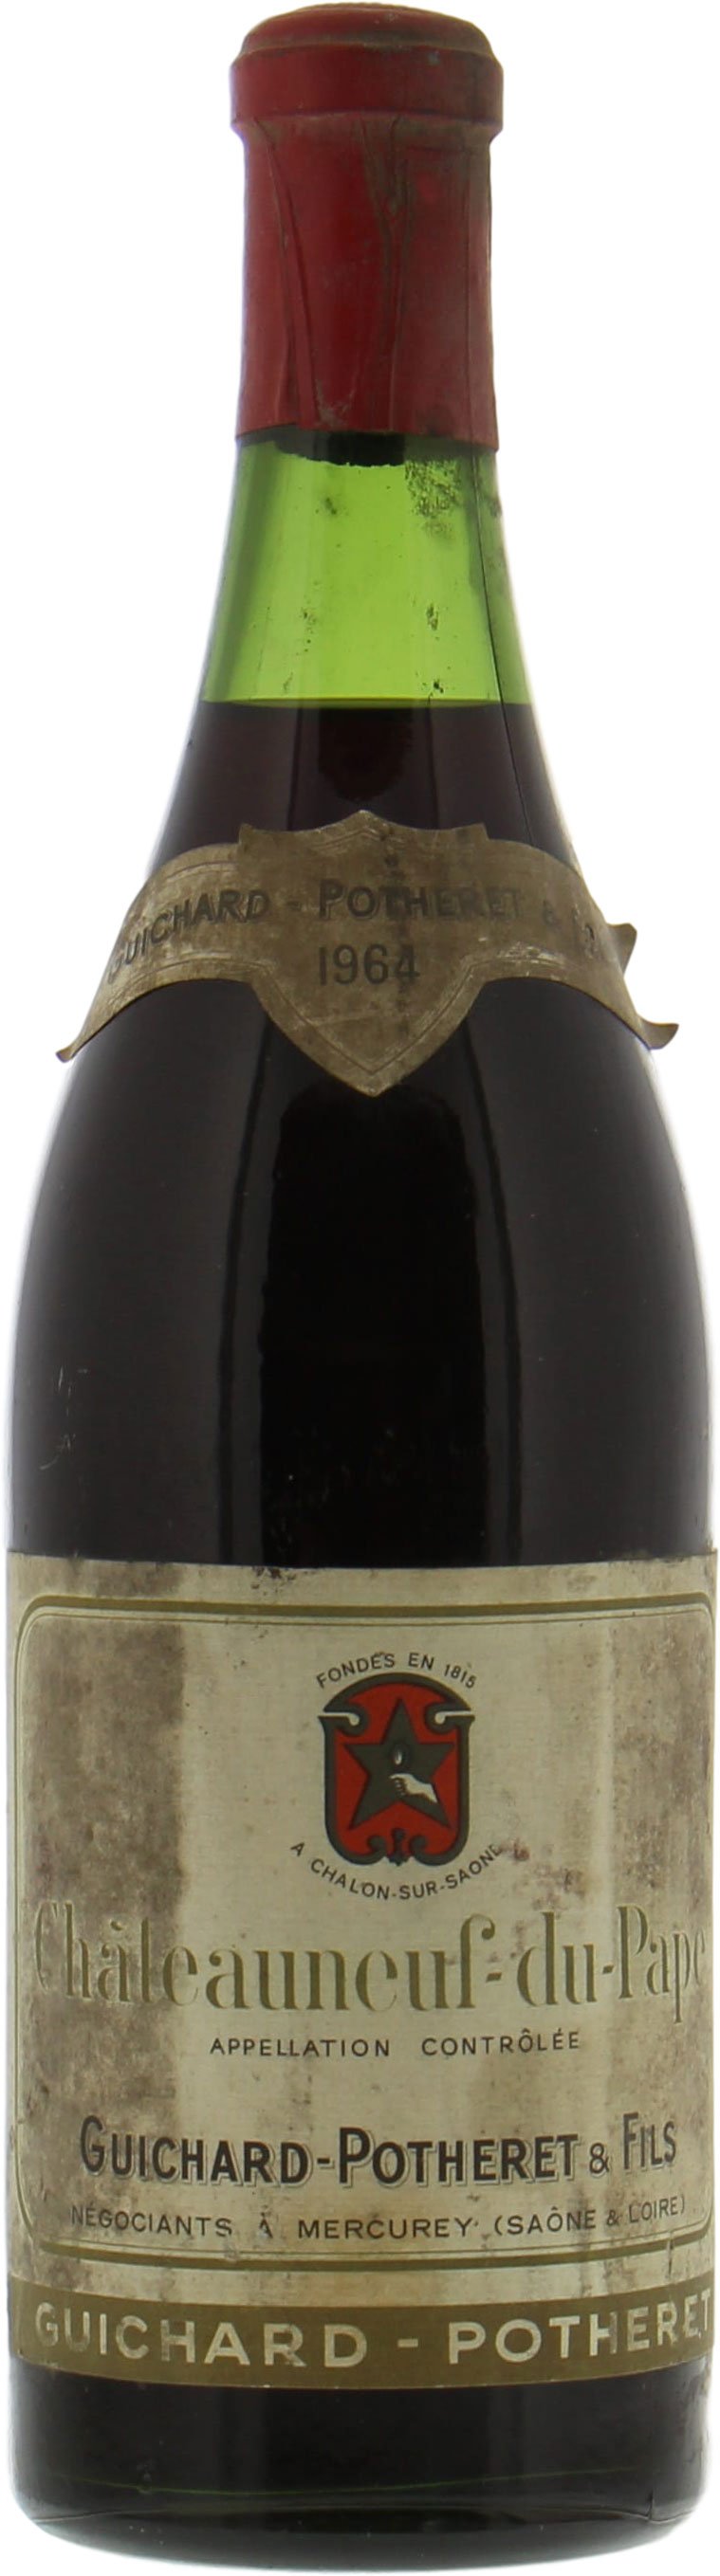 Guichard-Potheret - Chateauneuf du Pape 1964 3-5 cm